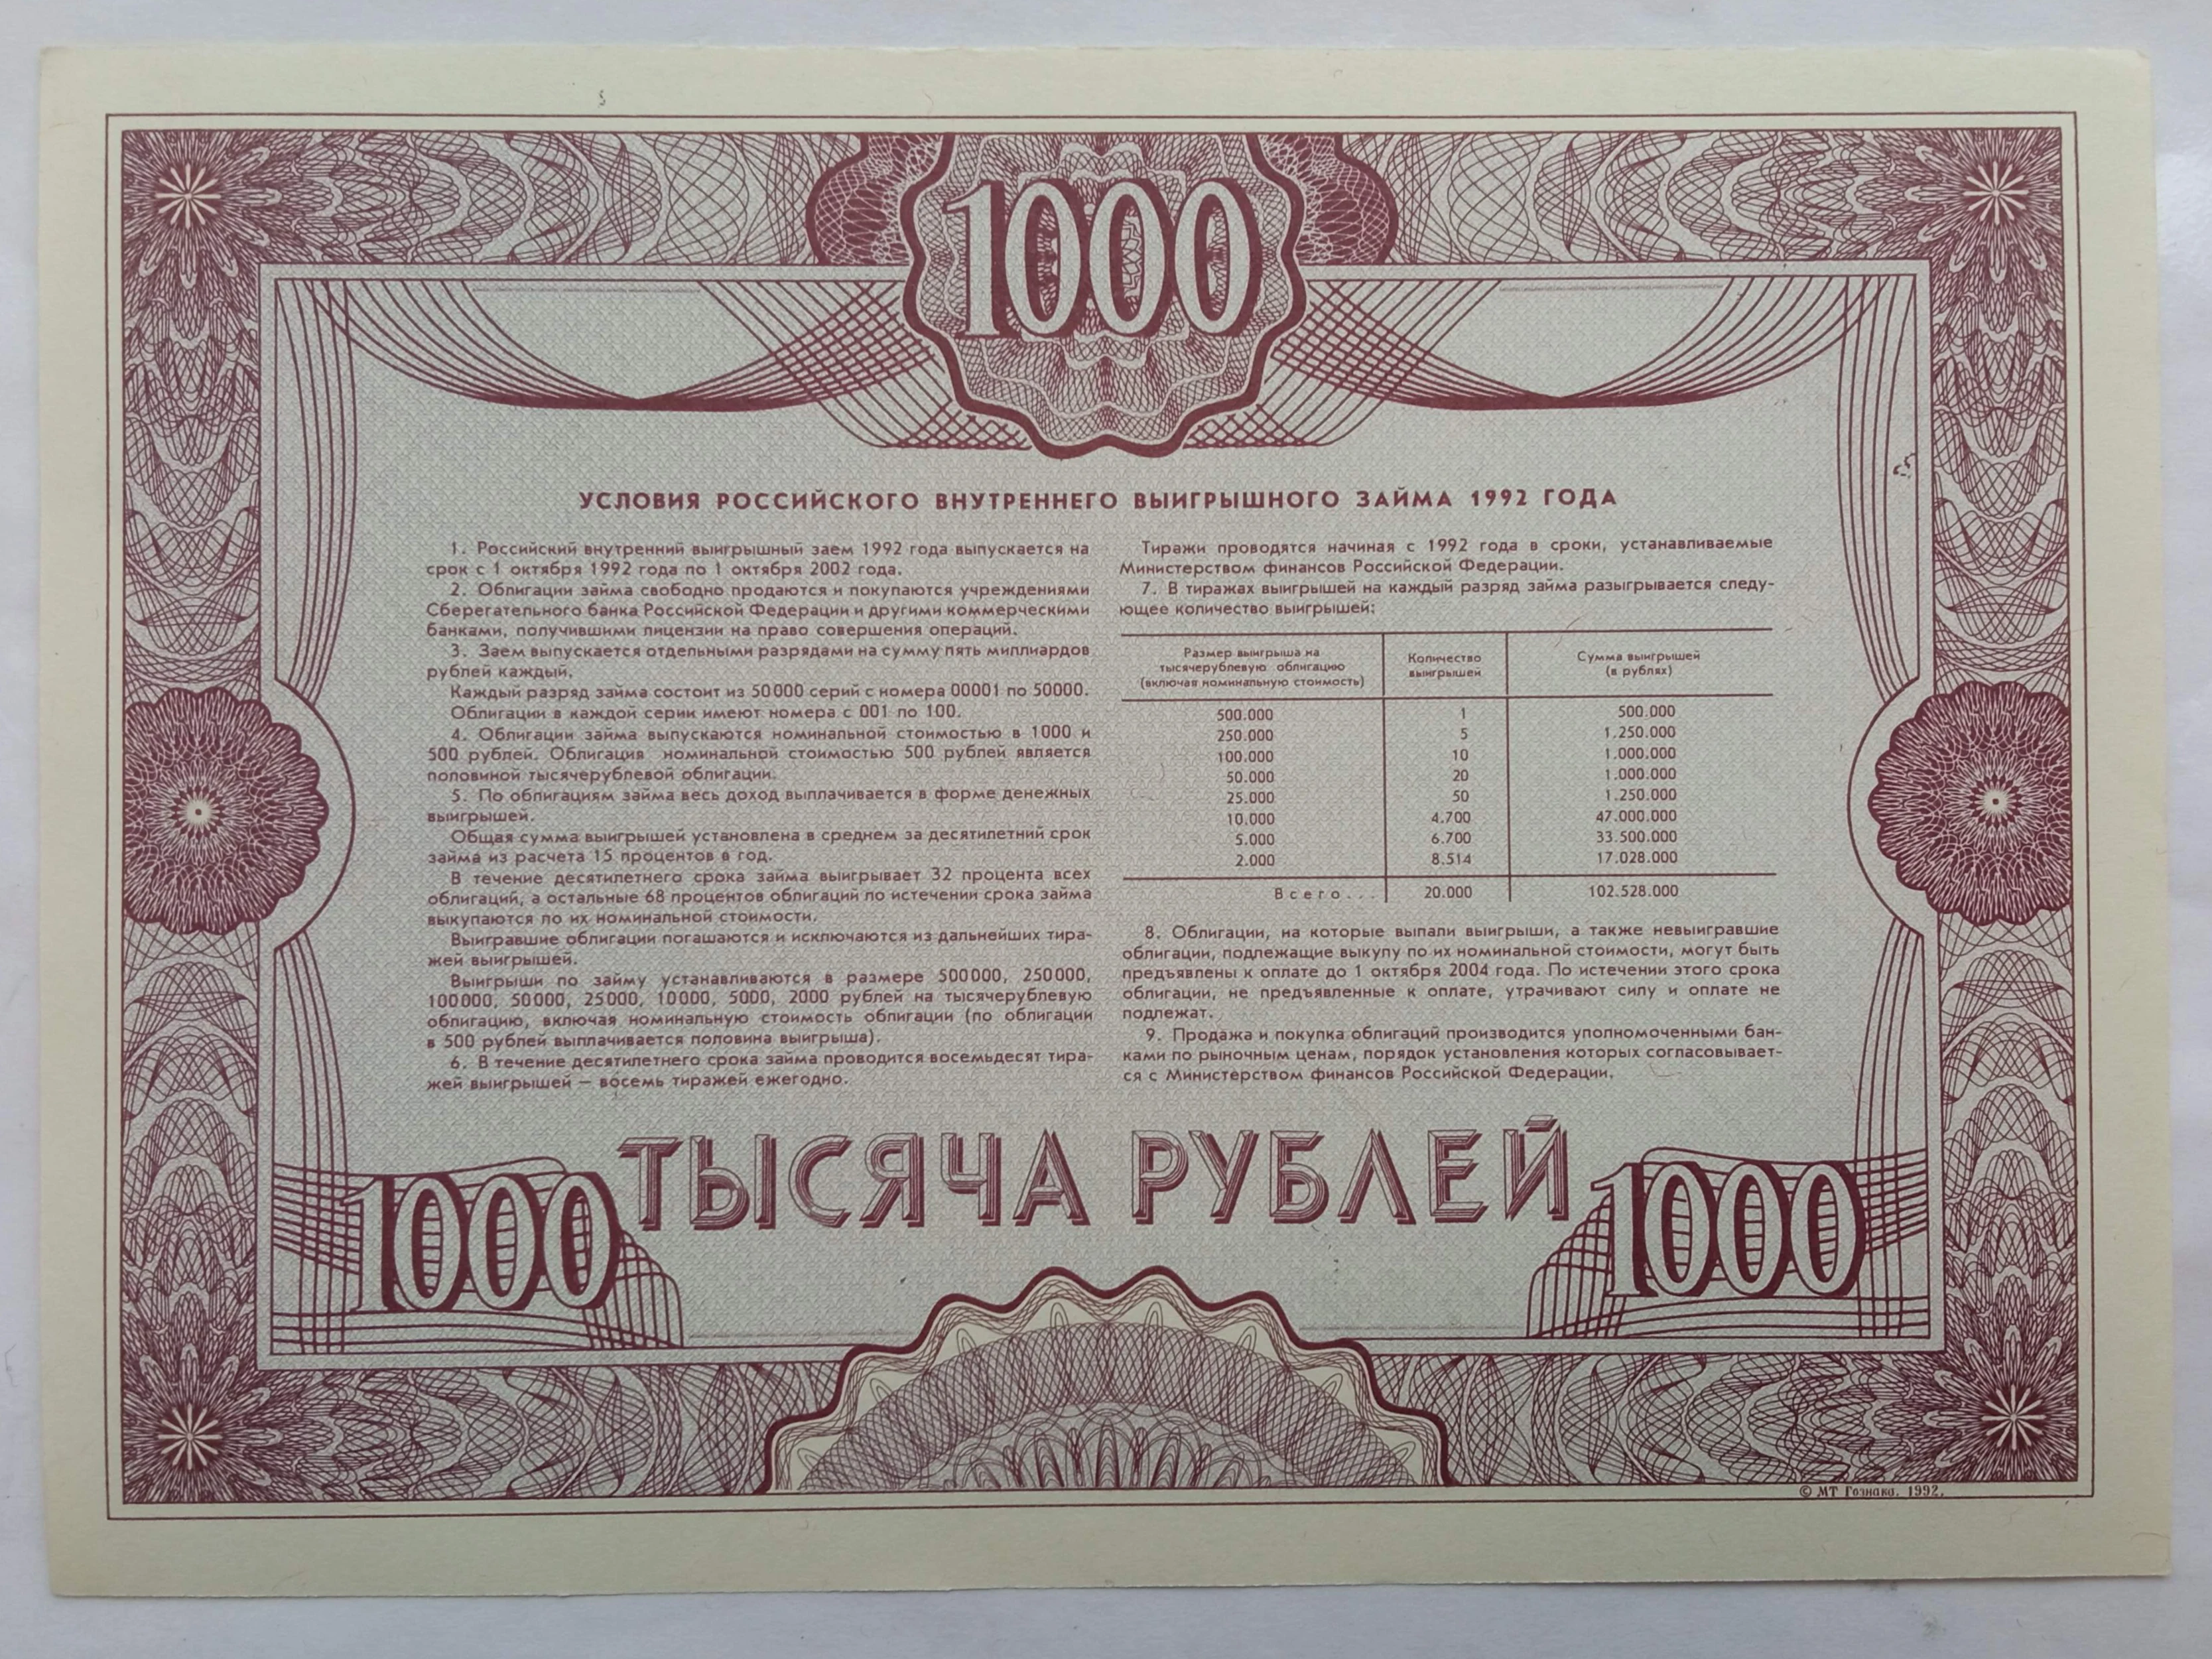 Российский выигрышный займ 1992